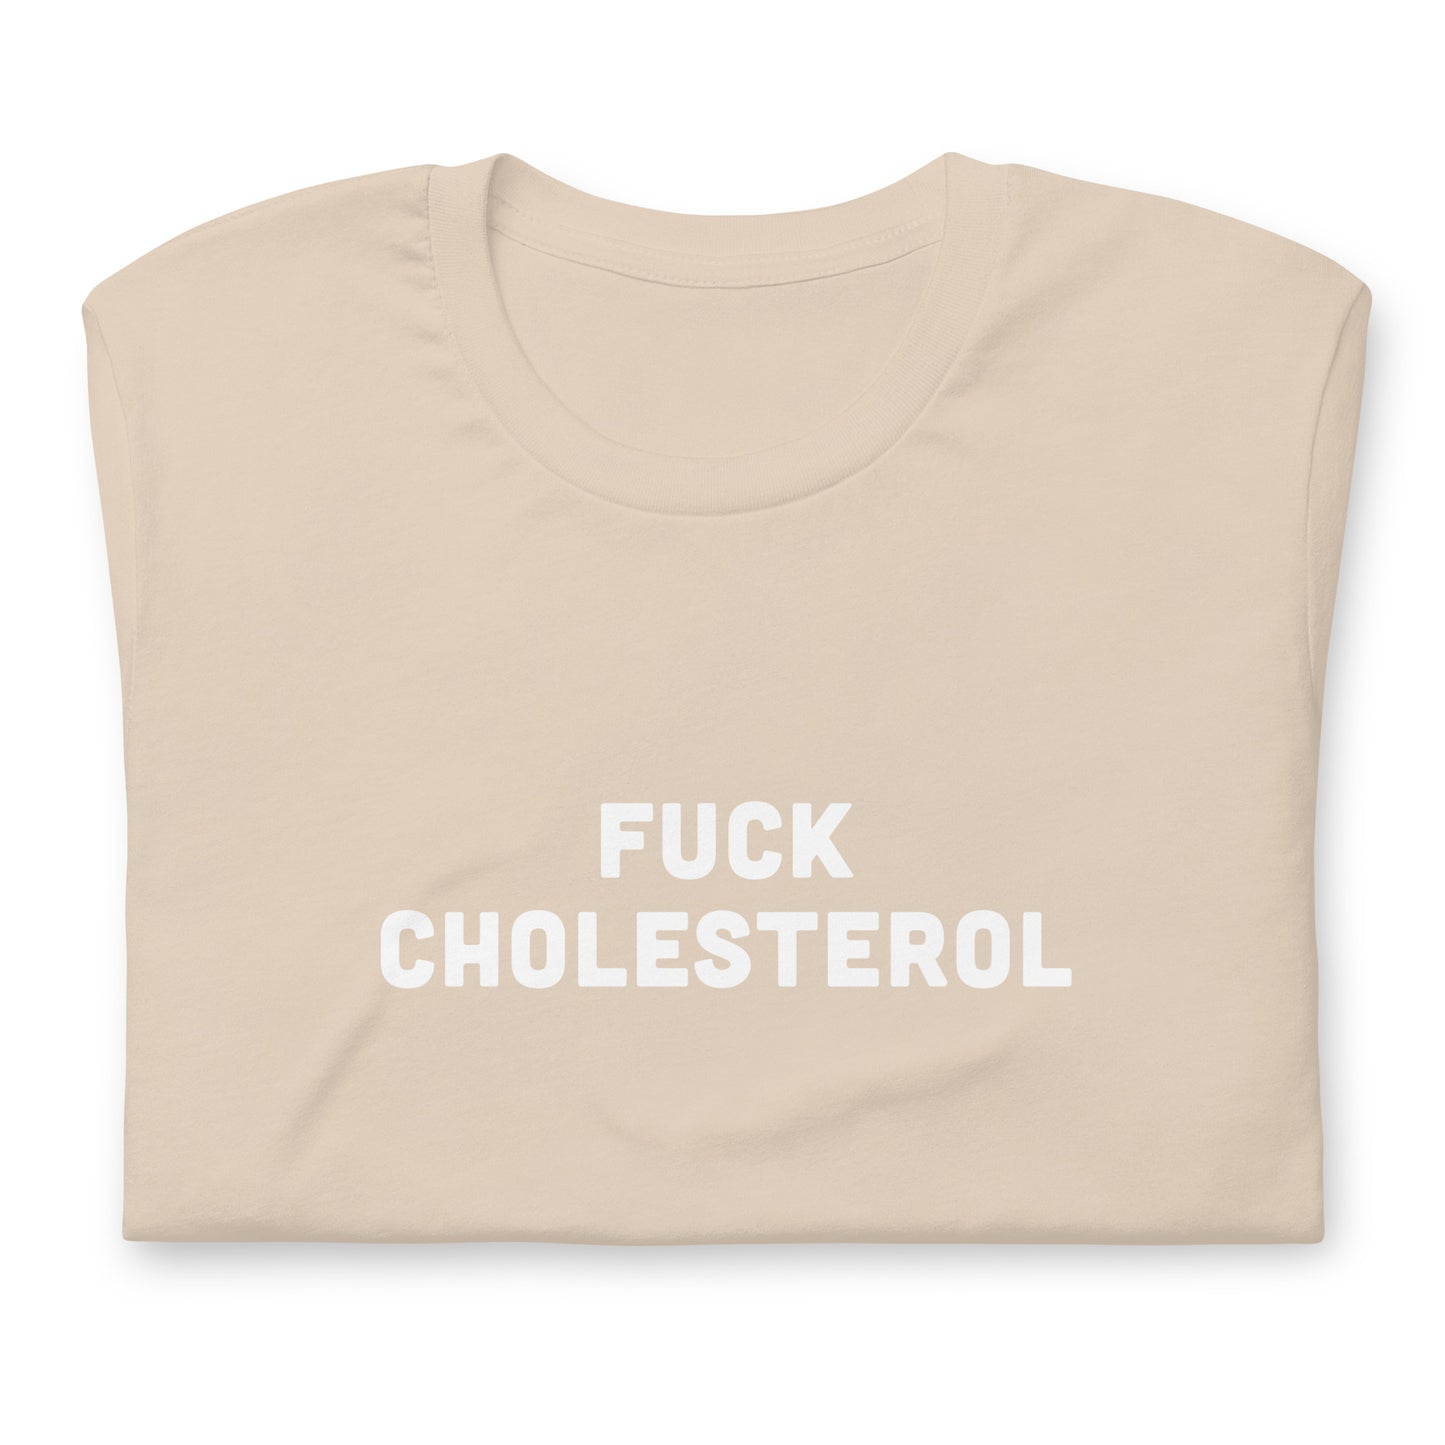 Fuck Cholesterol T-Shirt Size L Color Asphalt